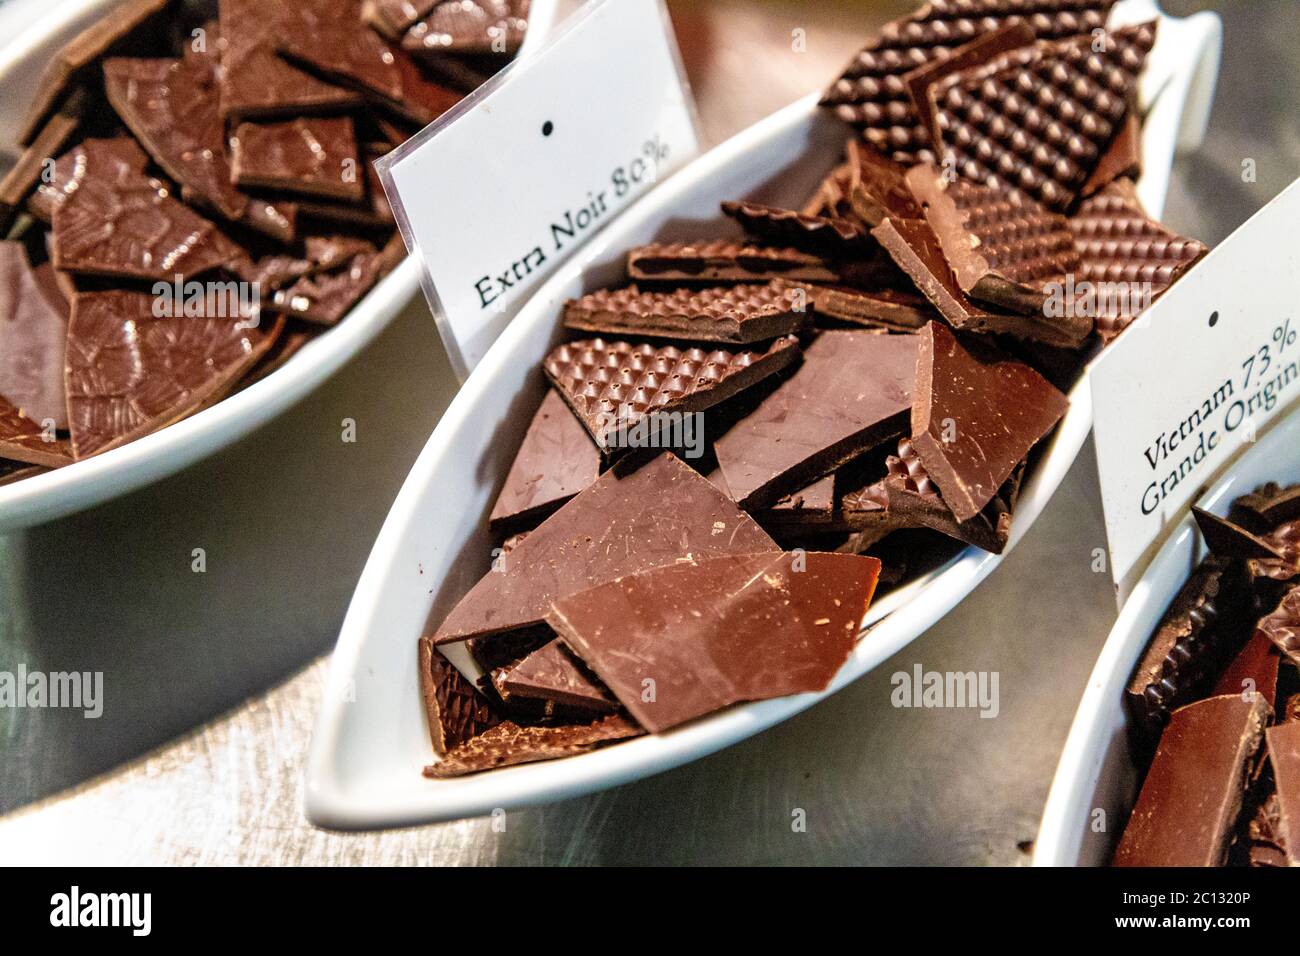 Assaggi di cioccolato presso l'Atelier du Chocolat, Musée du Chocolat, Museo del cioccolato, Bayonne, Francia Foto Stock